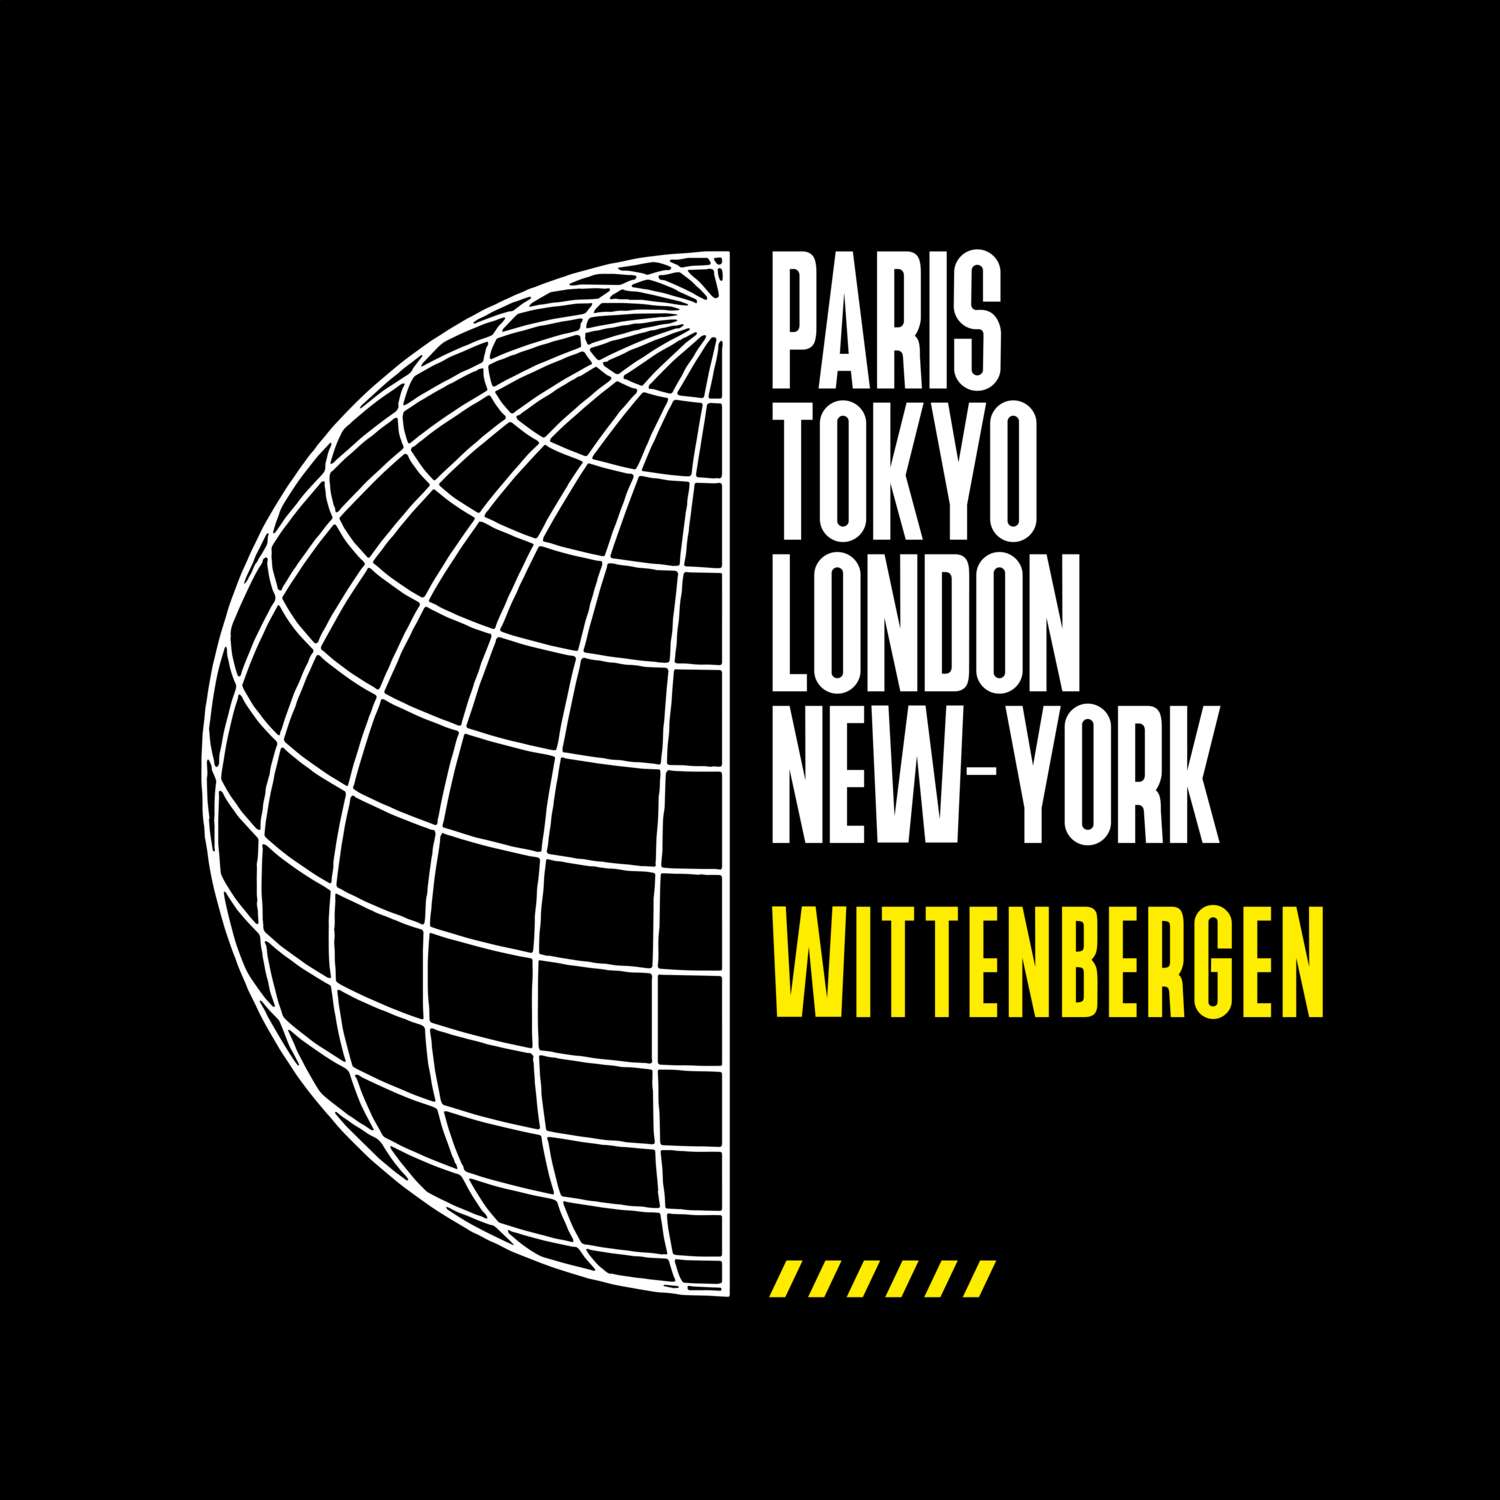 Wittenbergen T-Shirt »Paris Tokyo London«